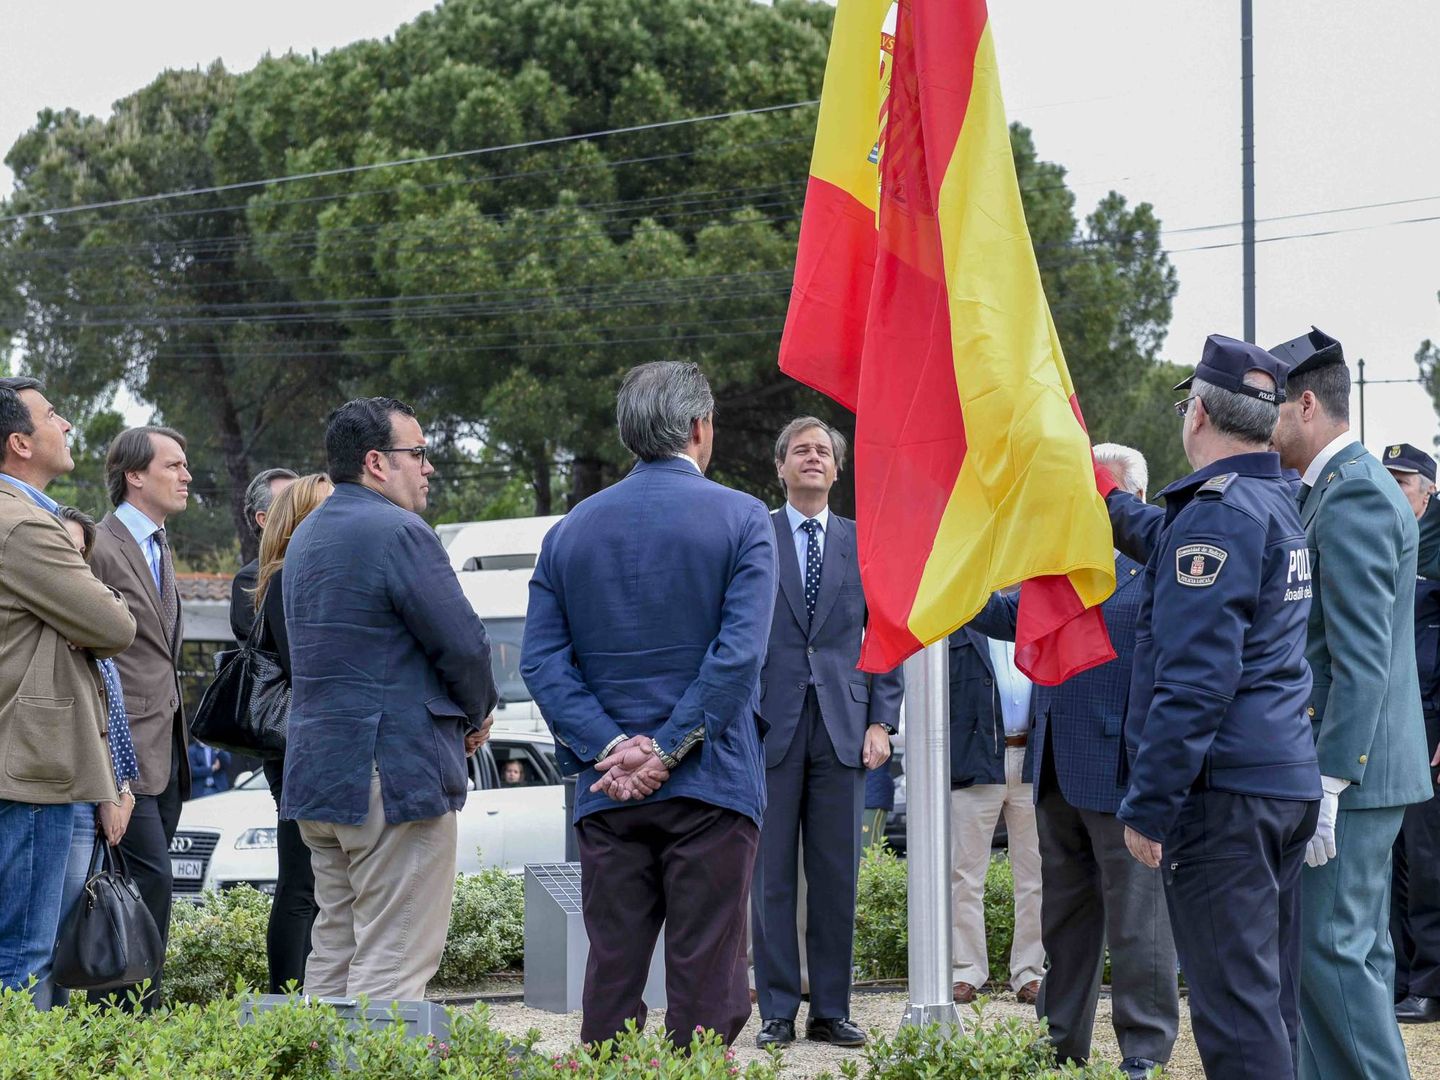 El alcalde de Boadilla, inaugurando una bandera de España en mayo de 2016 en una de las glorietas del municipio.